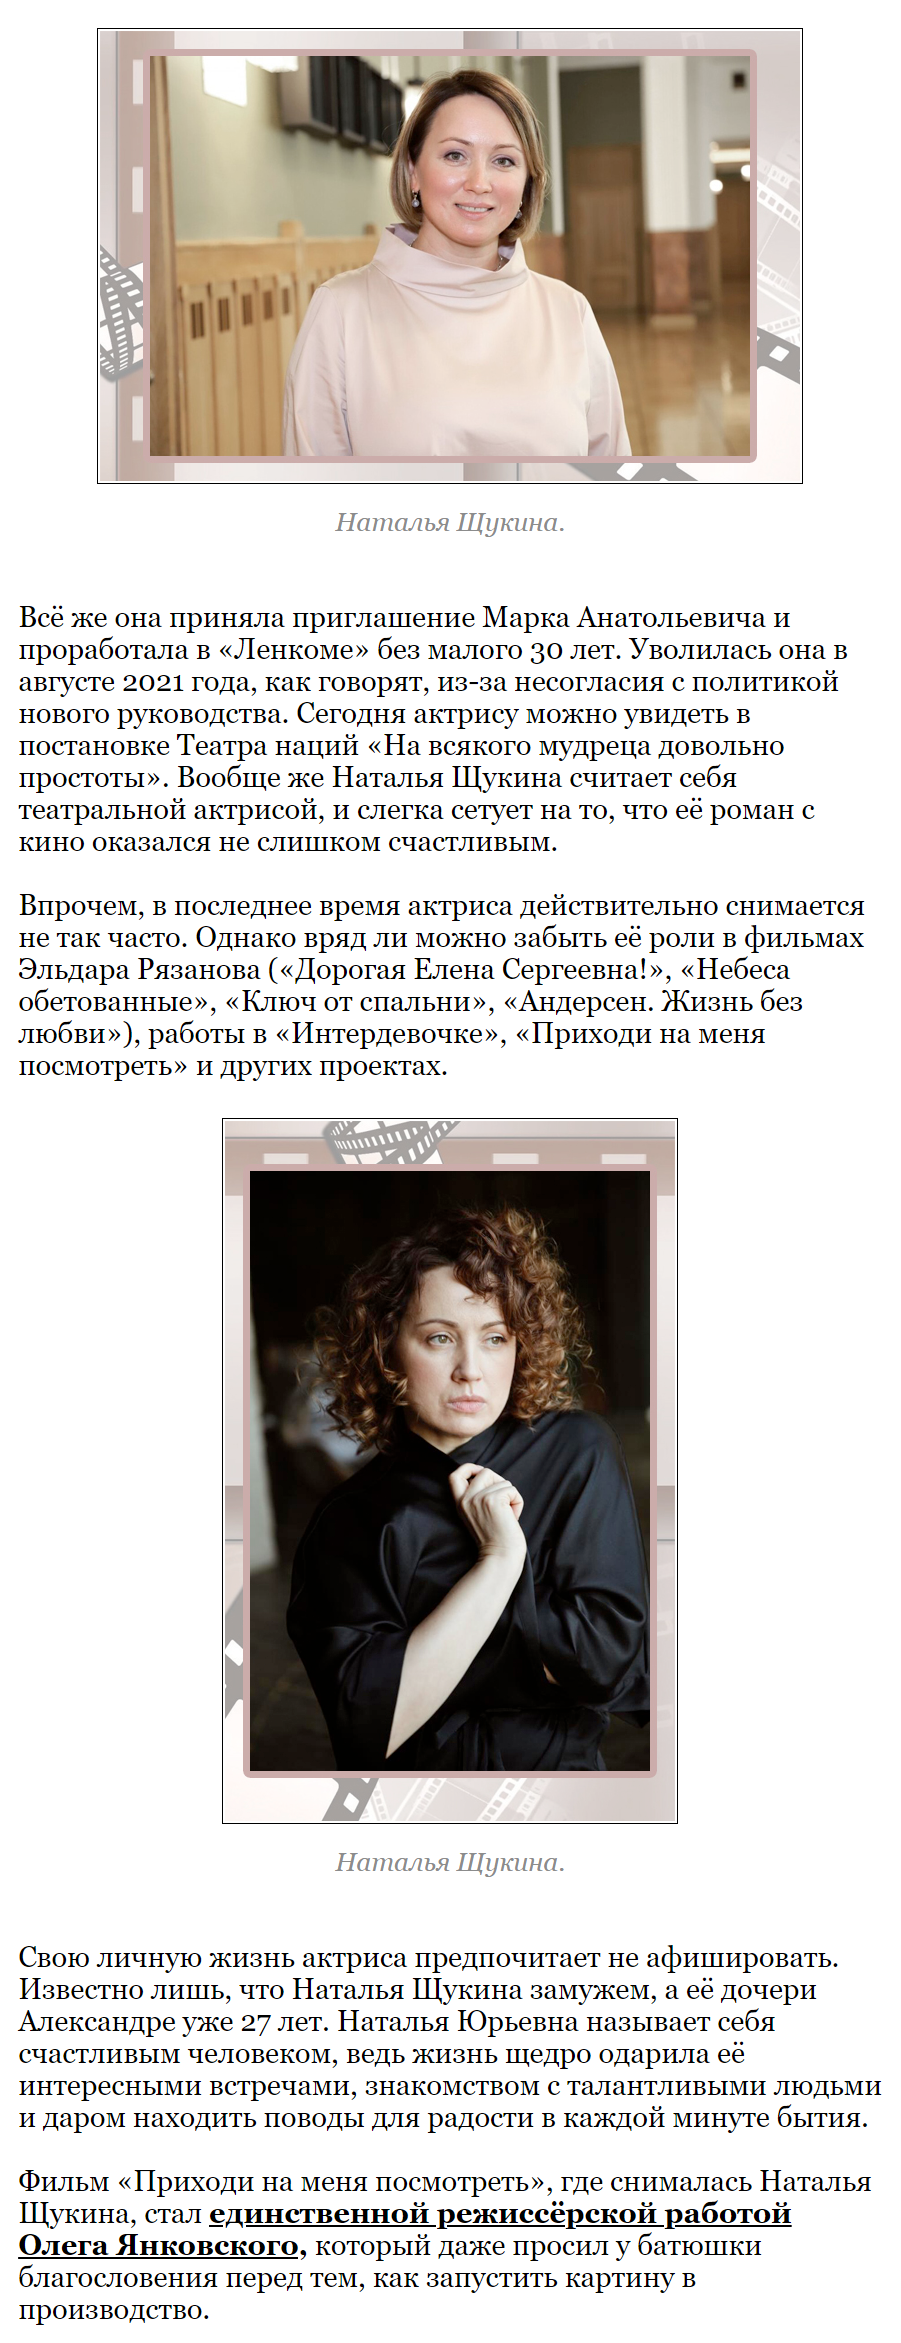 Наталья Щукина актриса - фото в молодости и сейчас фото Знаменитости в  молодости на welcomevolunteer.ru